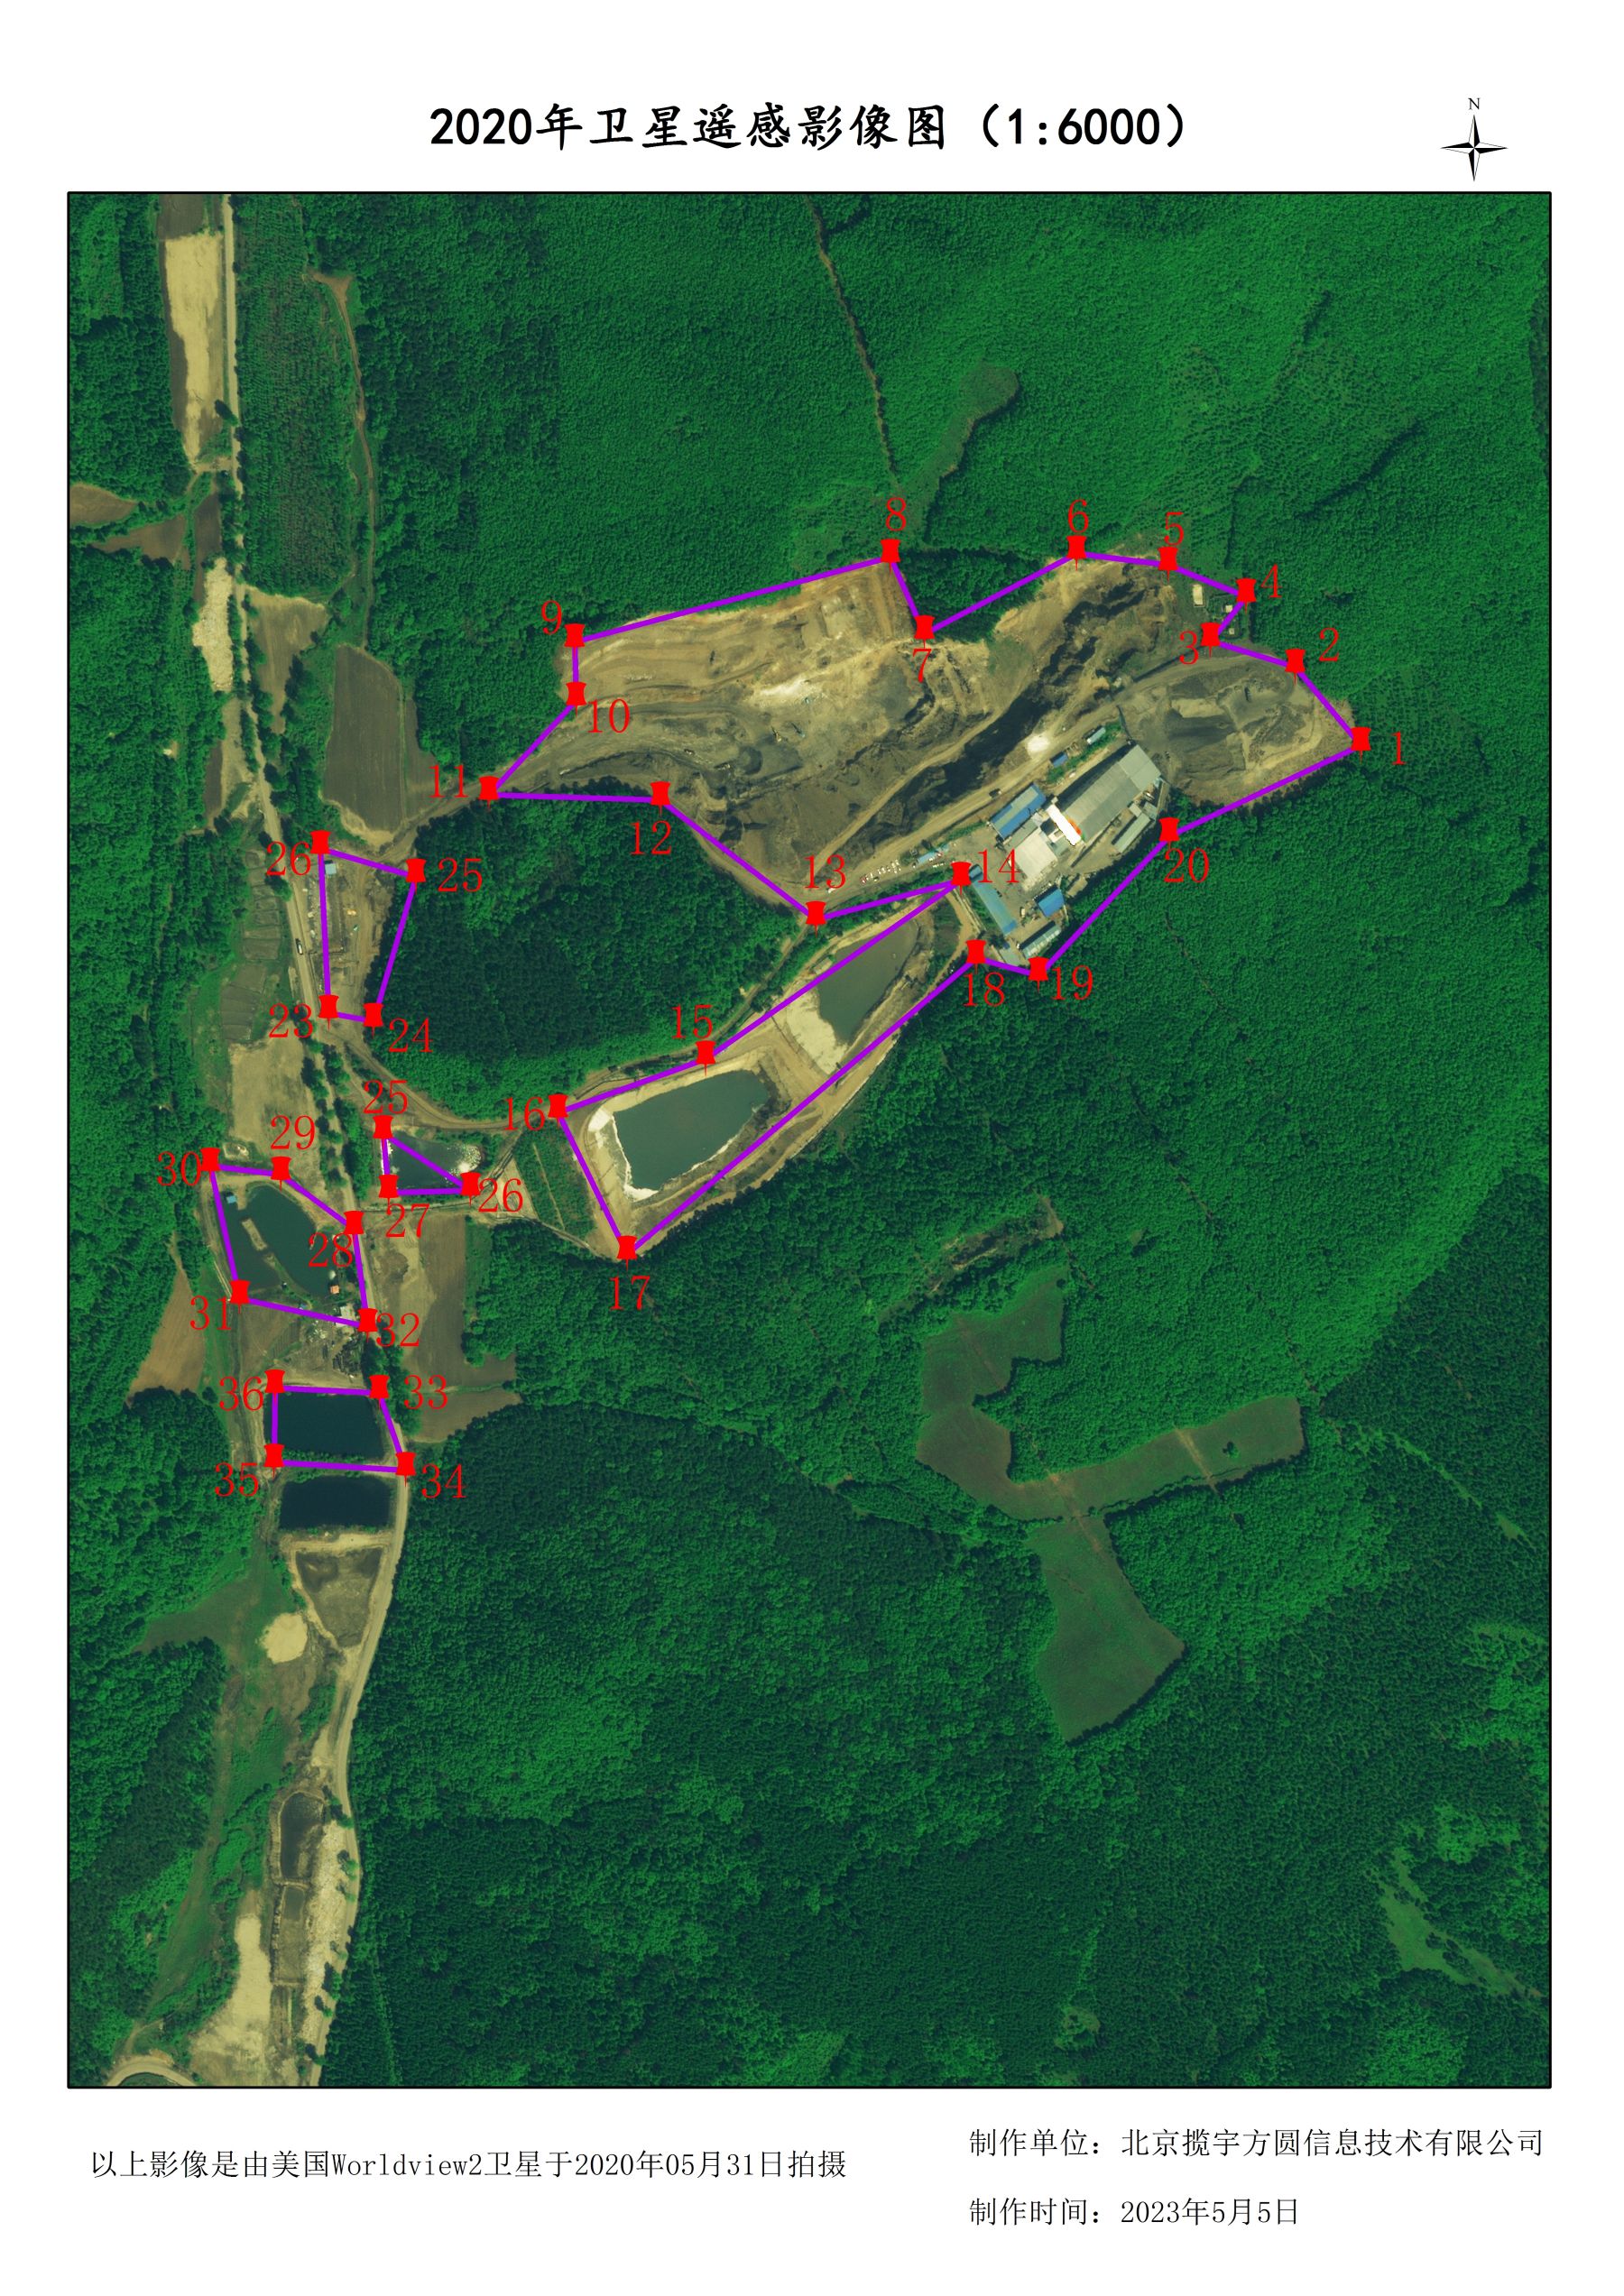 美国0.5米分辨率在同一矿区卫星拍摄影像矢量样例